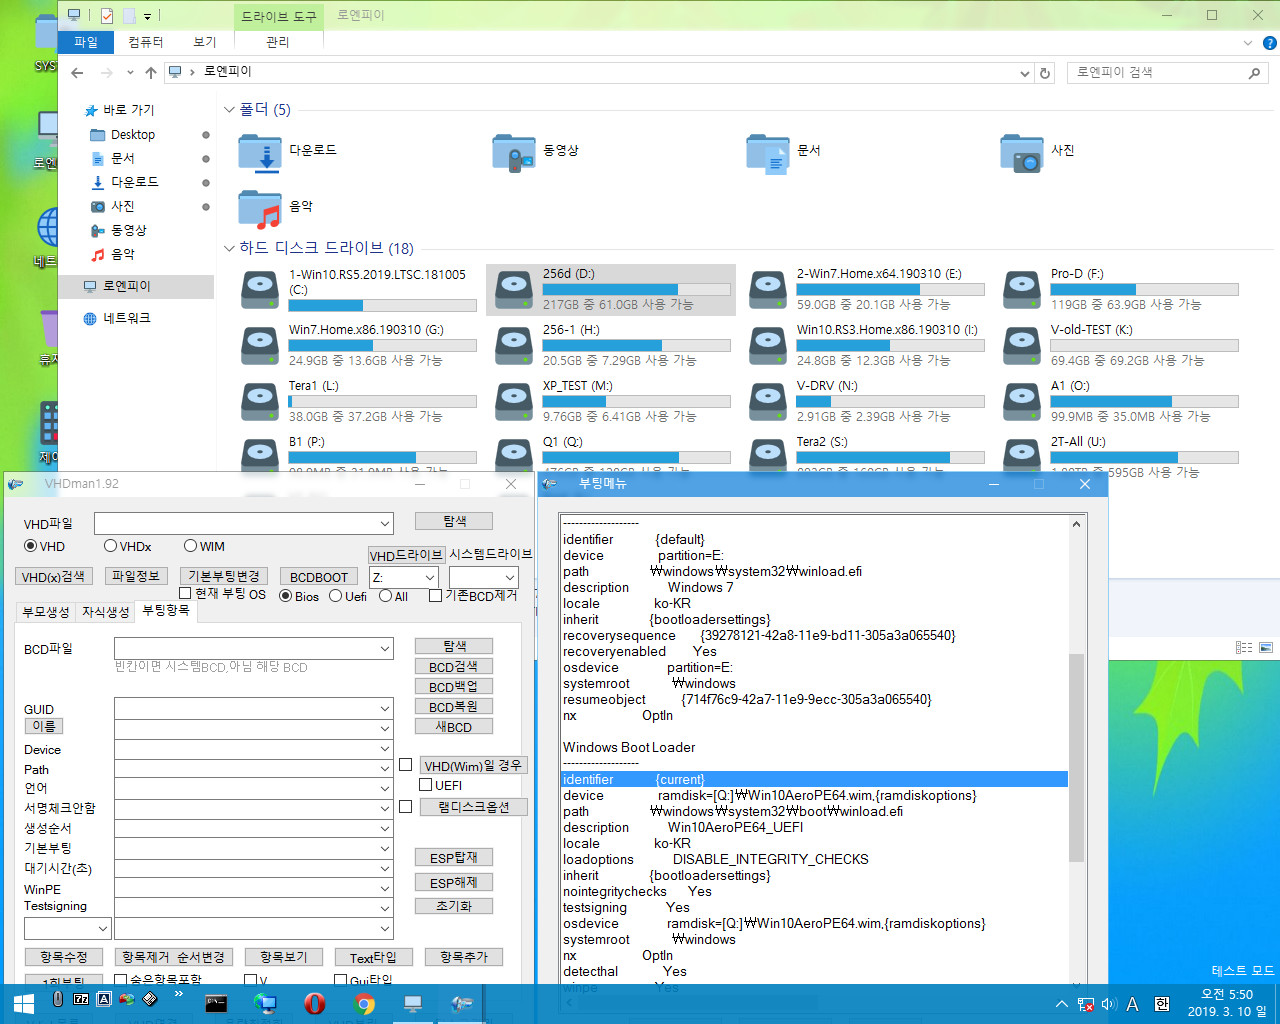 윈도의 bootmgr 낮은 버전으로 상위 윈도와 상위 PE 부팅 가능한지 테스트 - UEFI 모드 2019-03-10_055021.jpg